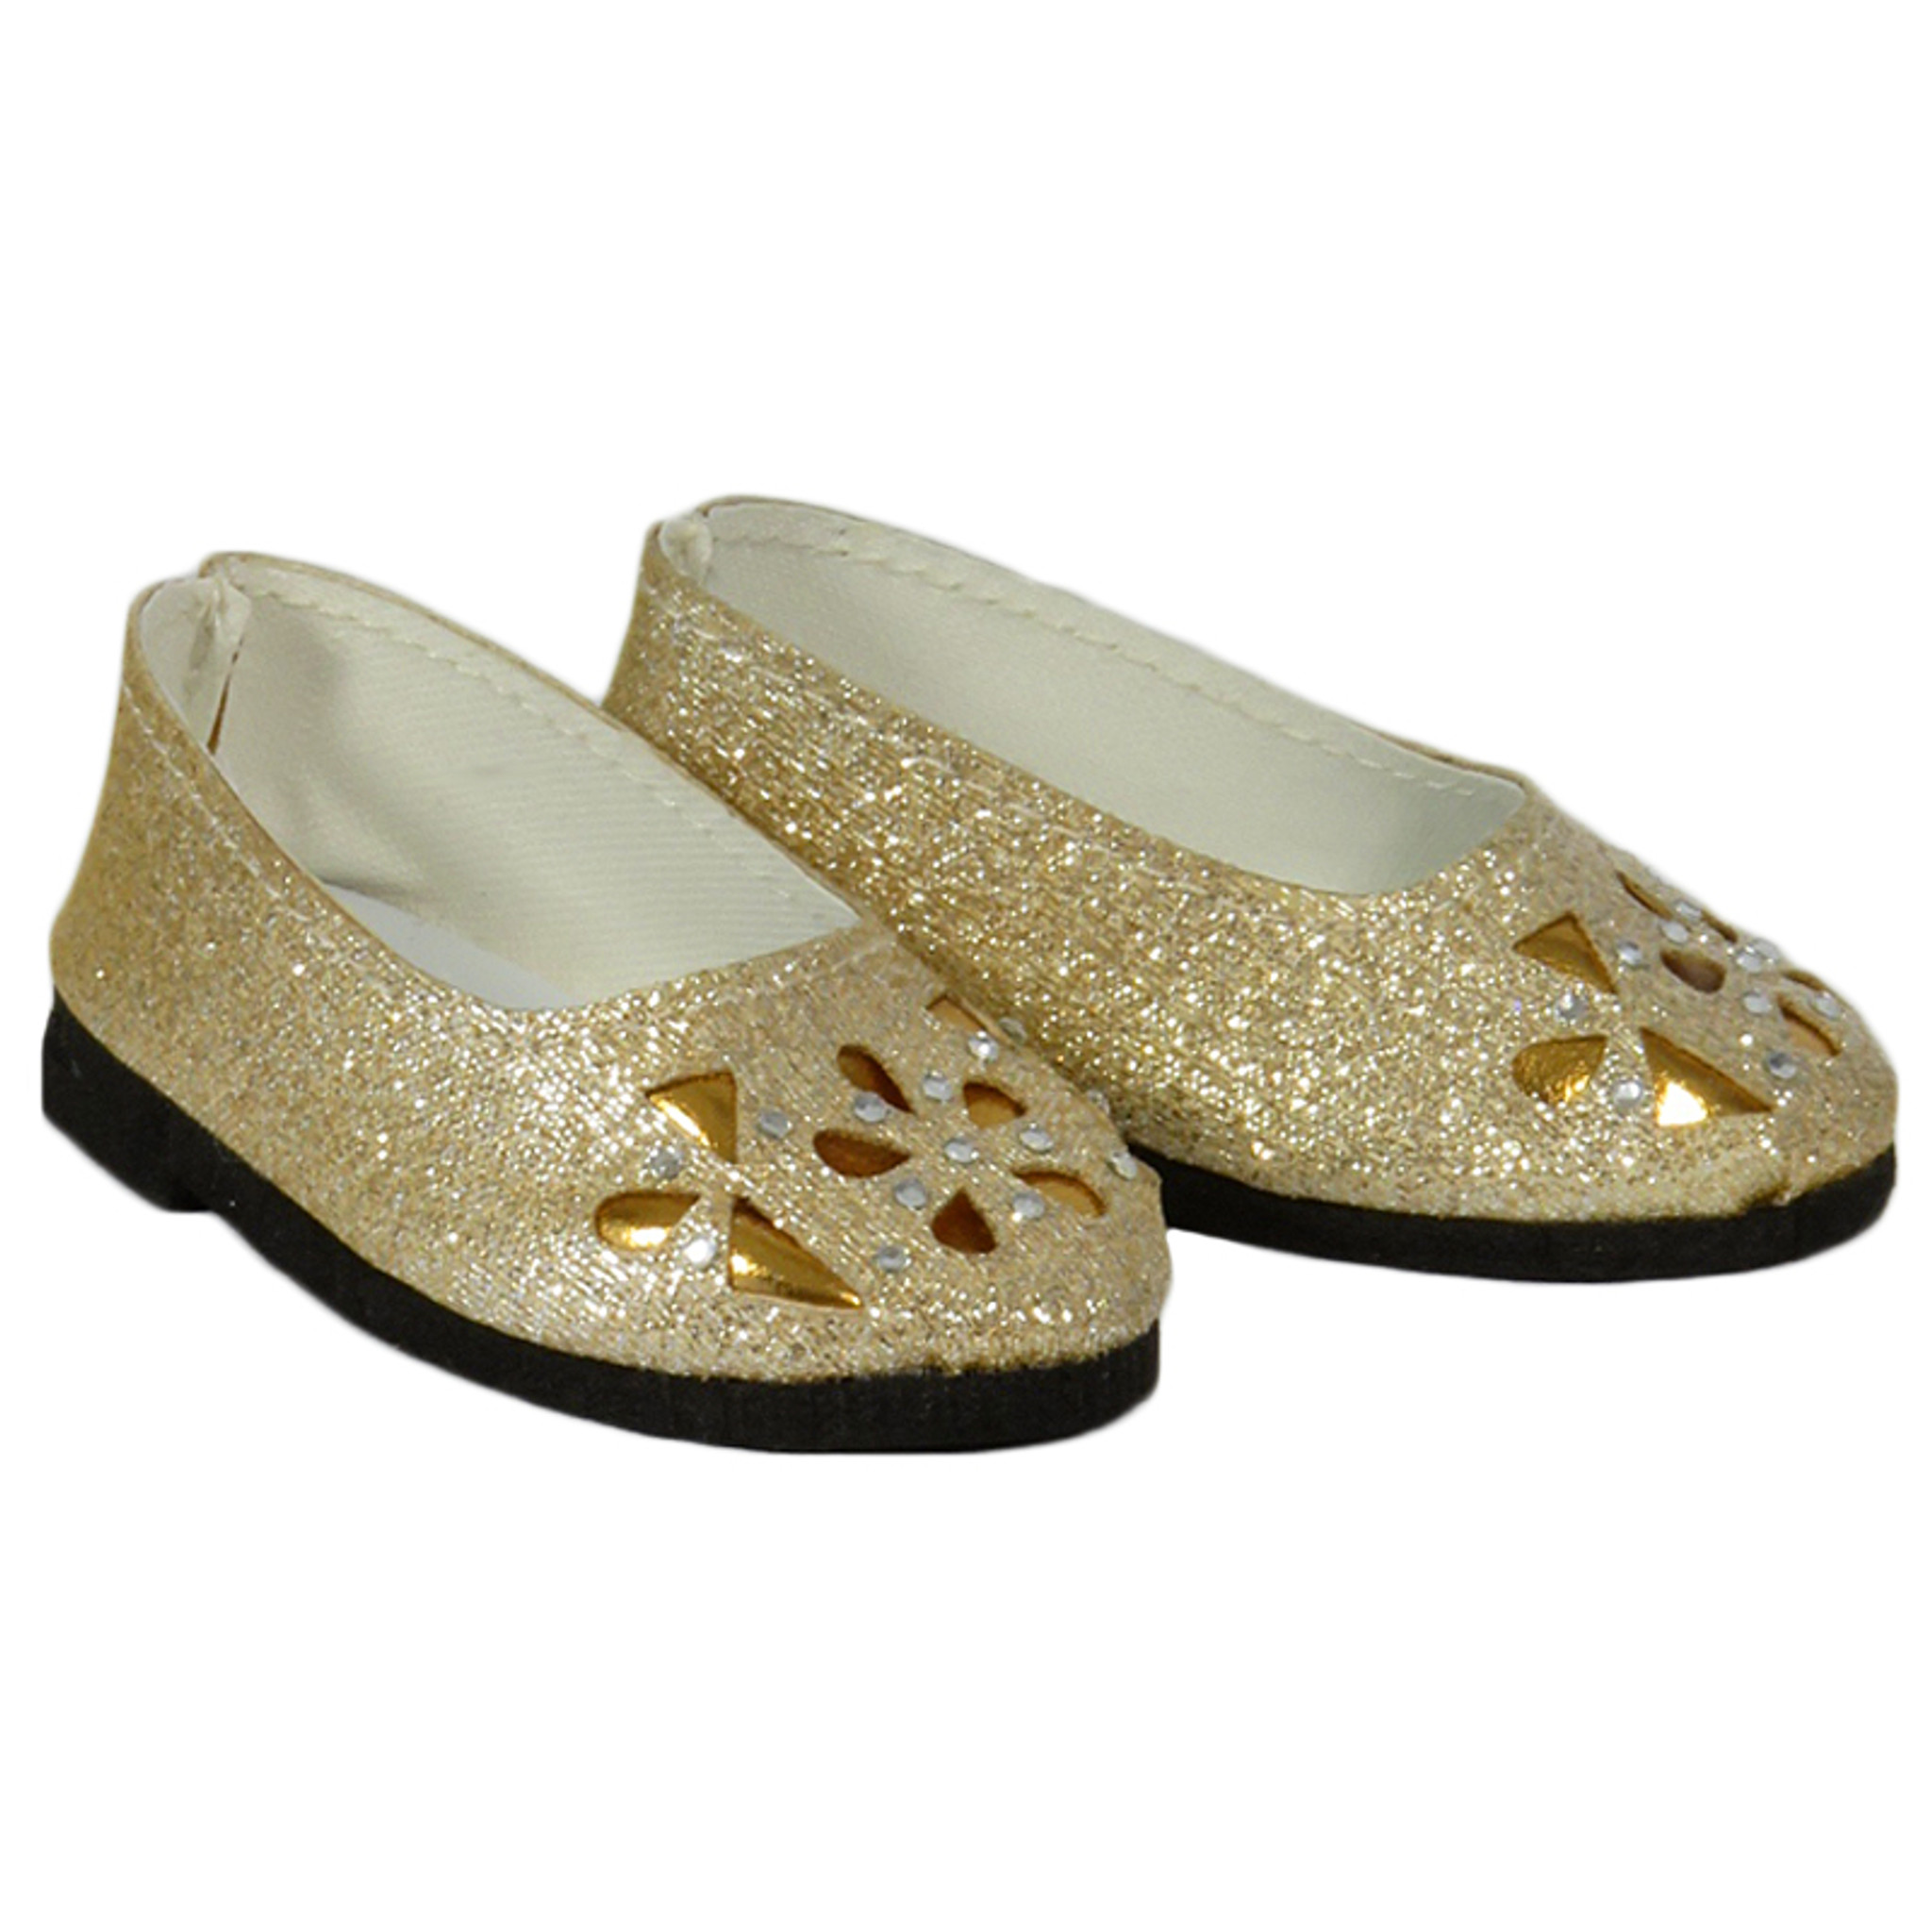 Kolan Girls Mary Jane Shoes Low Heel Party Dress Shoes India | Ubuy